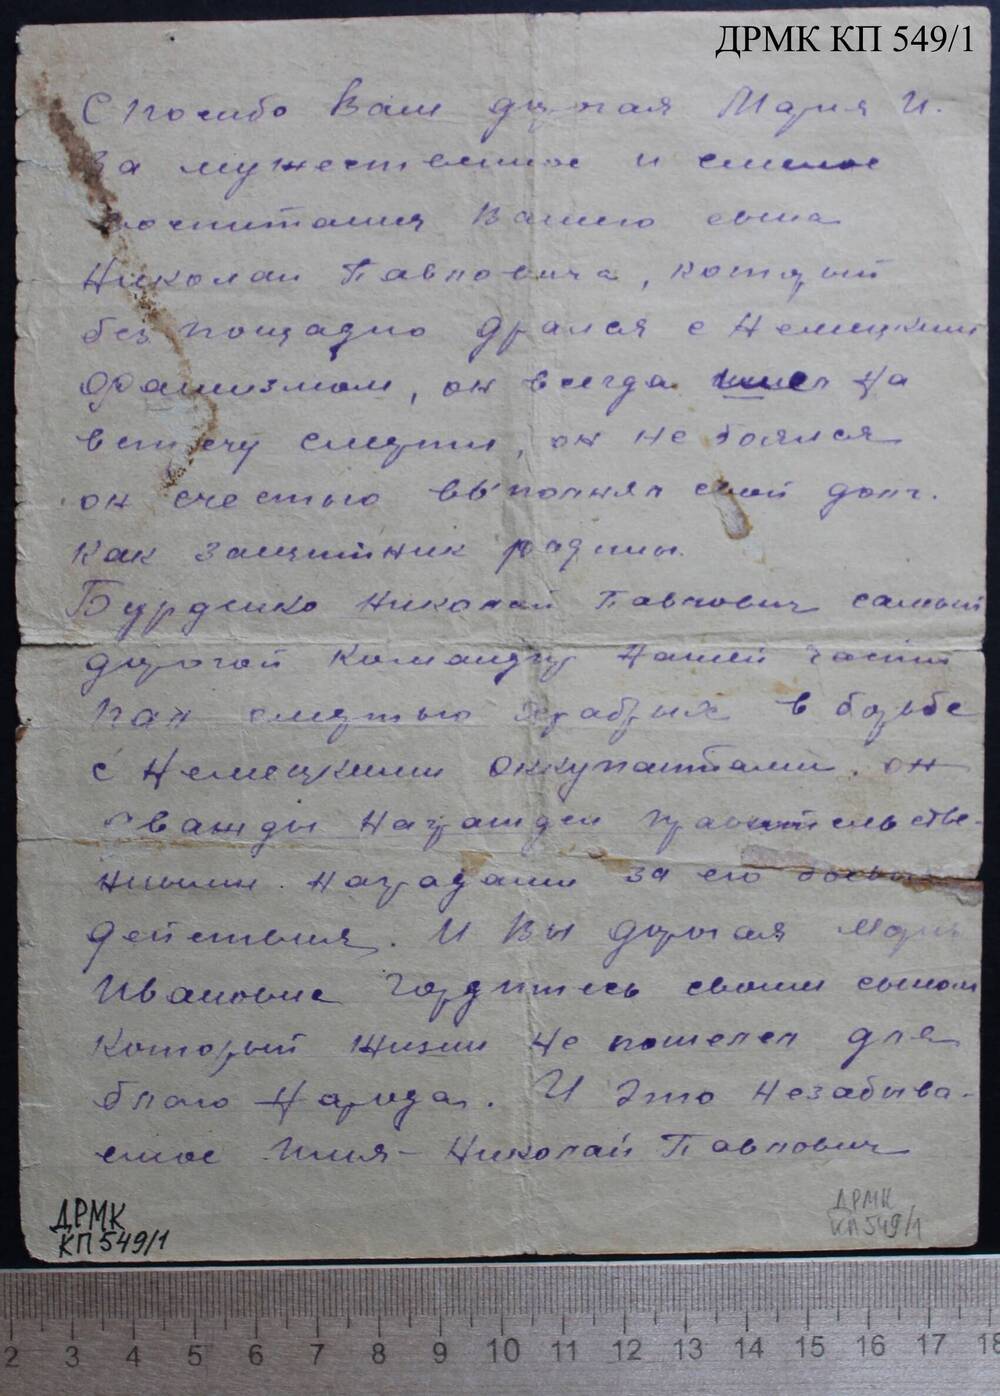 Письмо фронтовое от командира подразделения Баянова Марии Ивановне Бурденко о гибели её сына Николая, лист 1